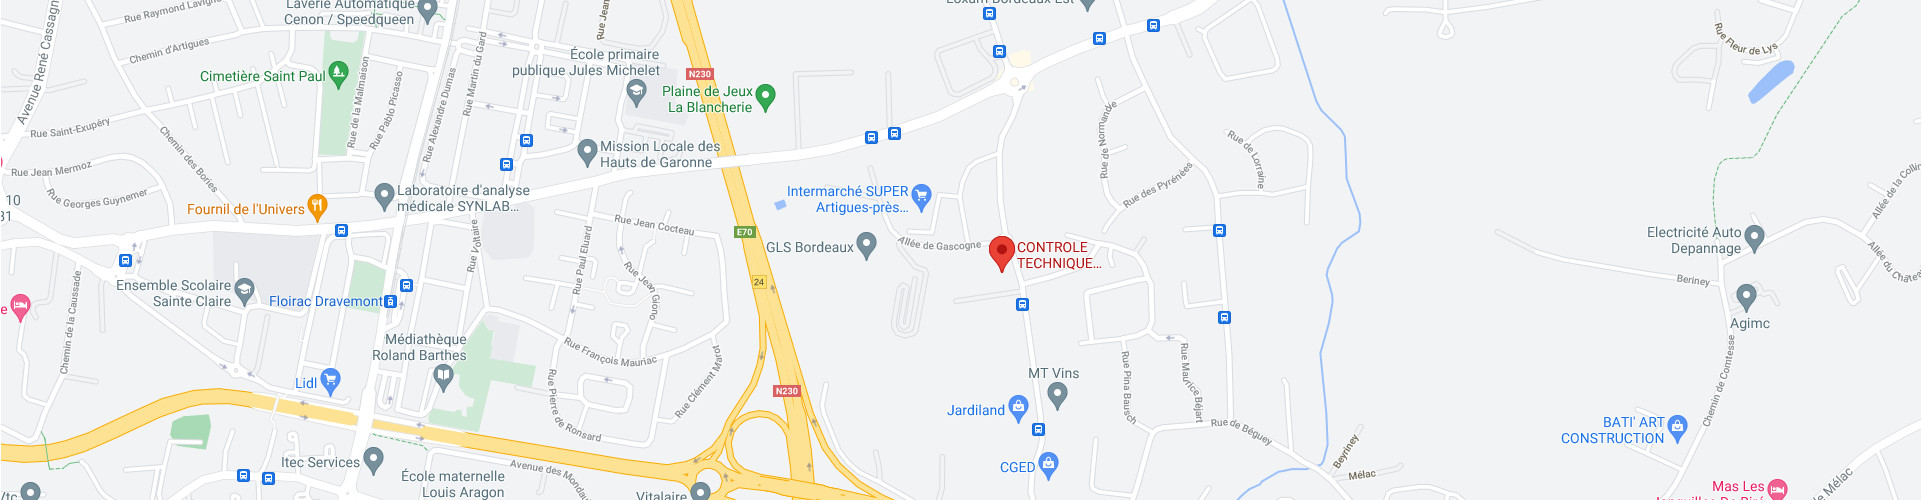 Cartographie Google Maps - Contrôles Techniques Artigues - 20 Avenue de l'Île de France, 33370 Bordeaux